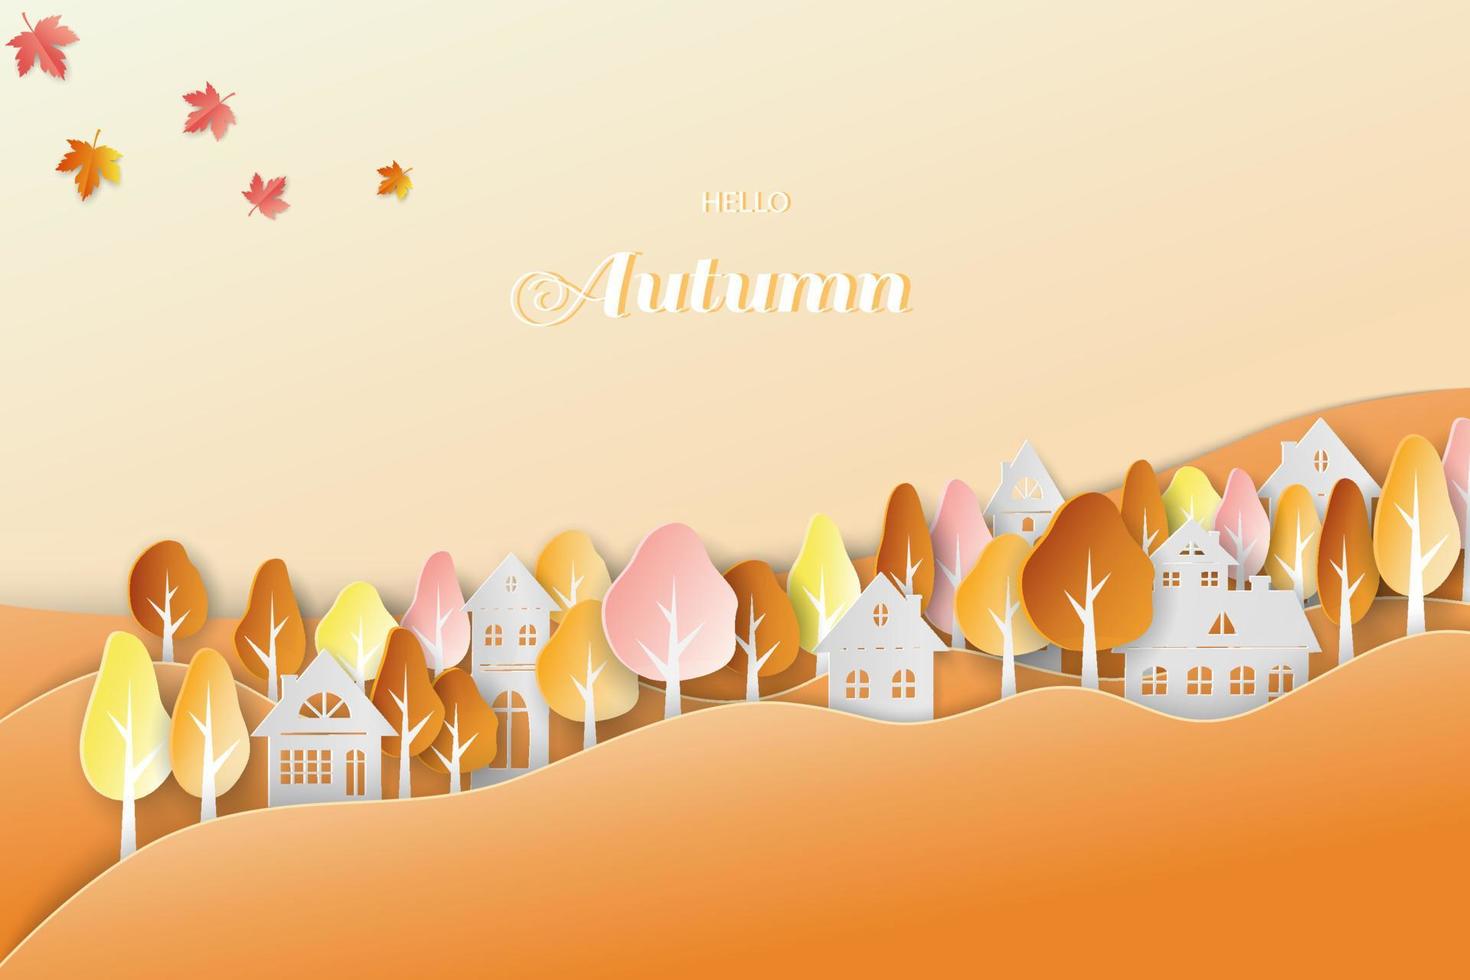 paysage de saison d'automne avec campagne et feuilles colorées sur papier découpé et style artisanal vecteur